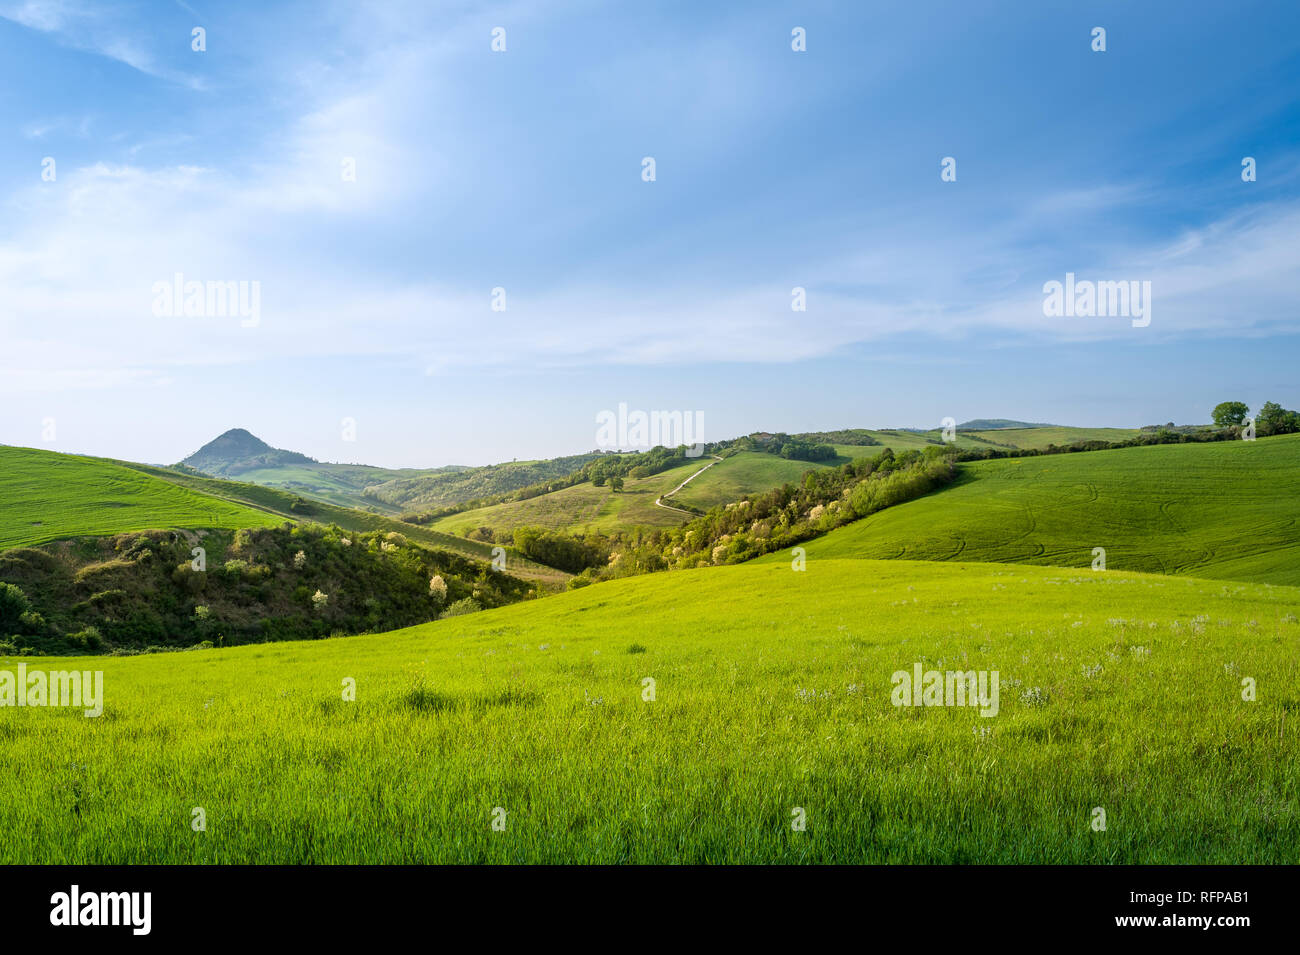 Straße in die grünen Felder der Toskana. Berühmte ländlichen Szenen von Toscano Provinz, Italien Stockfoto